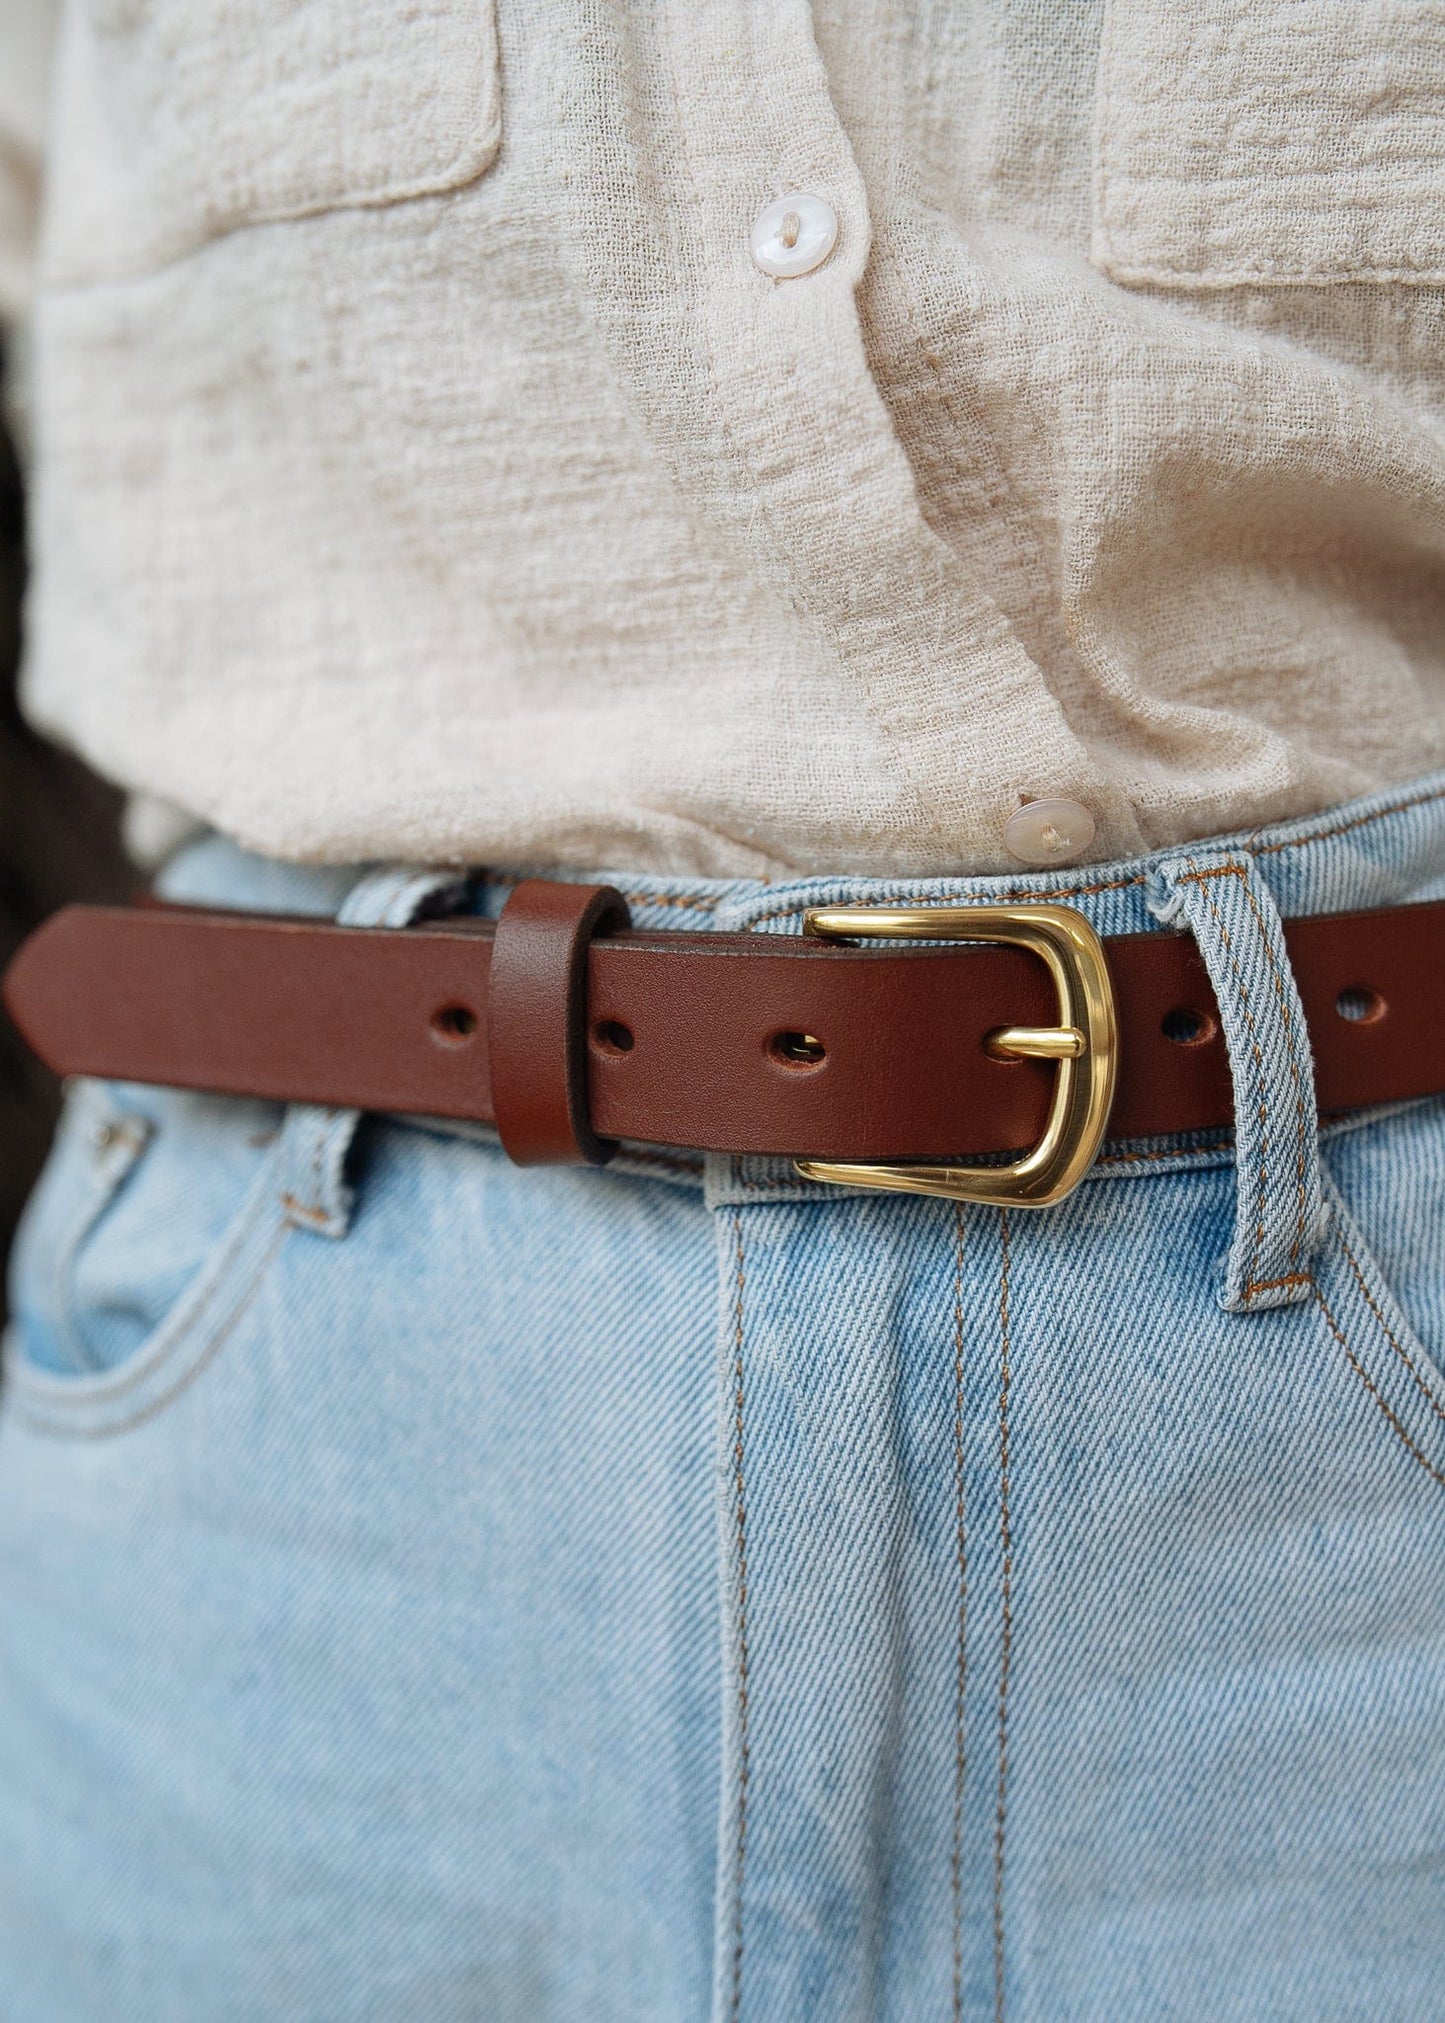 The Real McCaul Leathergoods Belts Plain Narrow 25mm Belt - Cognac Australian Made Australian Owned Australian Made 25mm Narrow Leather Belt - Tan